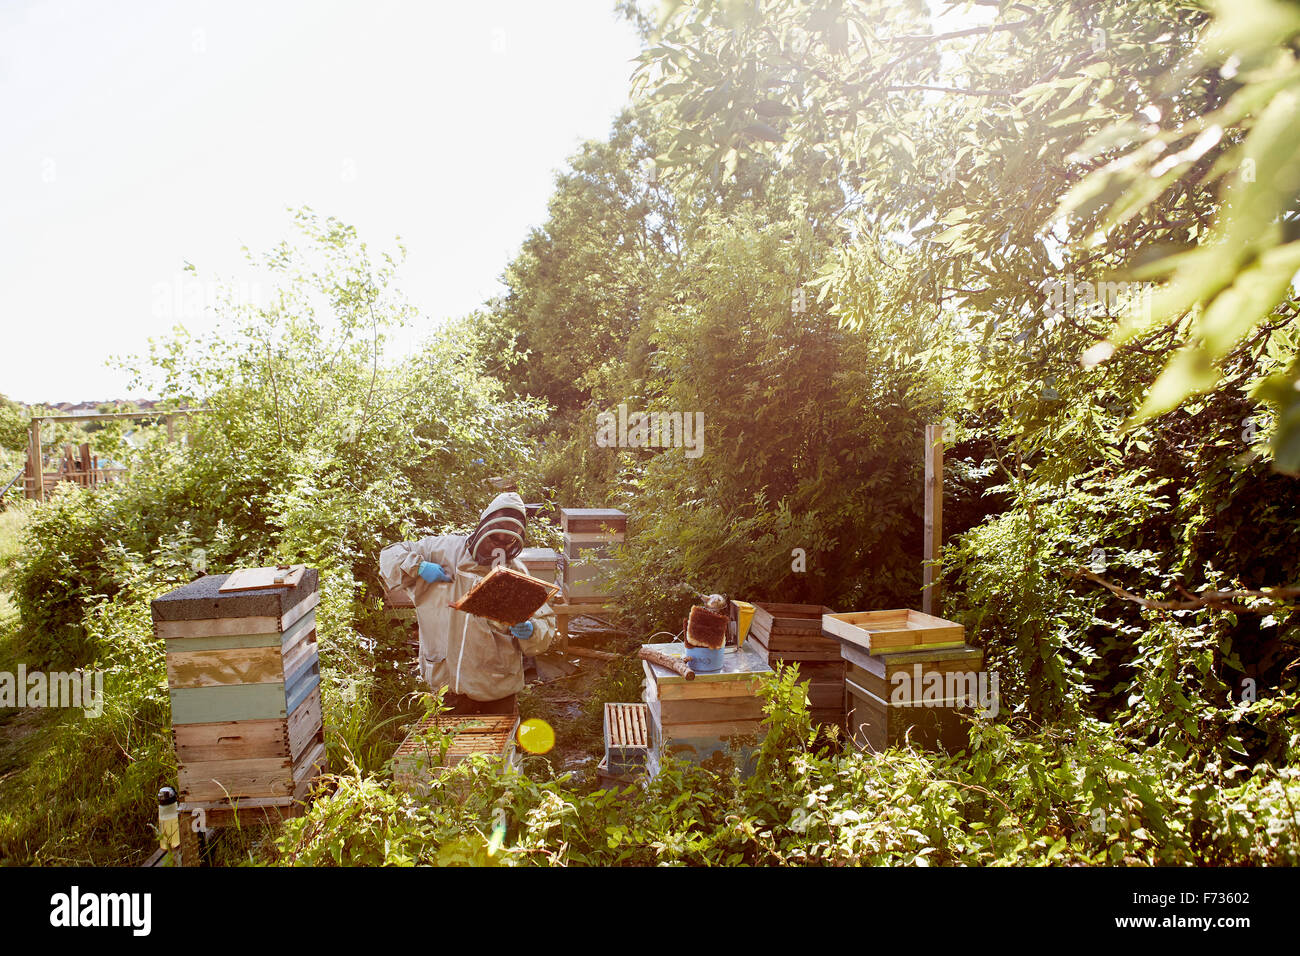 Un apicultor en un traje protector y la cara que cubre la inspección de los marcos de sus colmenas de abejas. Foto de stock